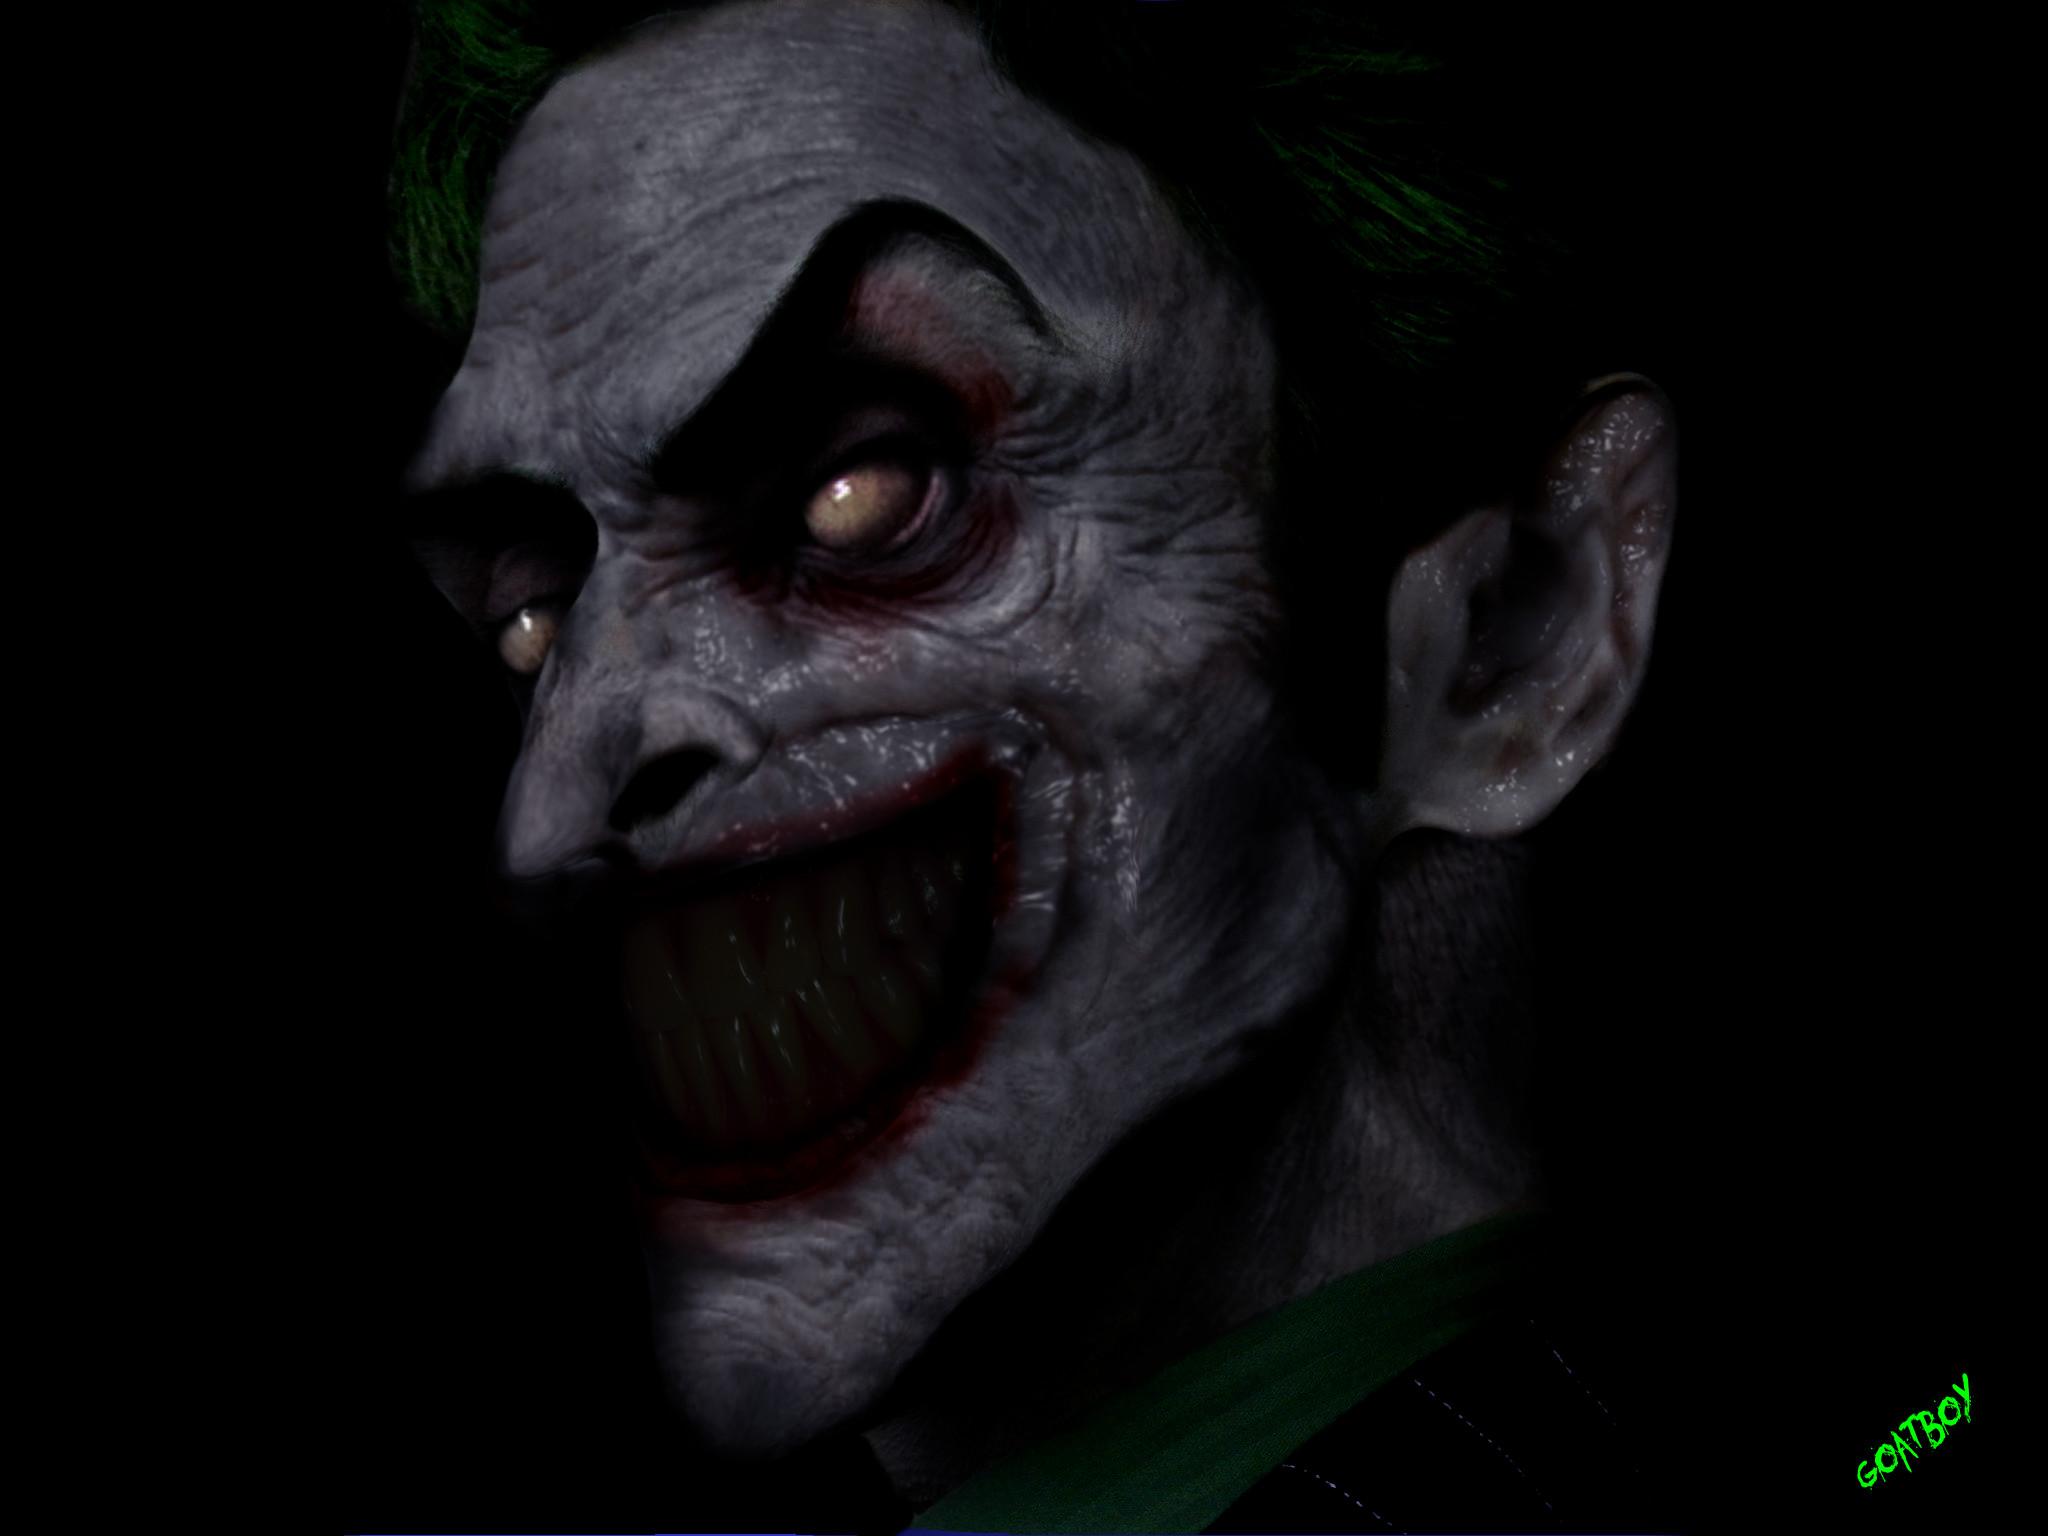 Joker Evil Smile Wallpapers - Wallpaper Cave